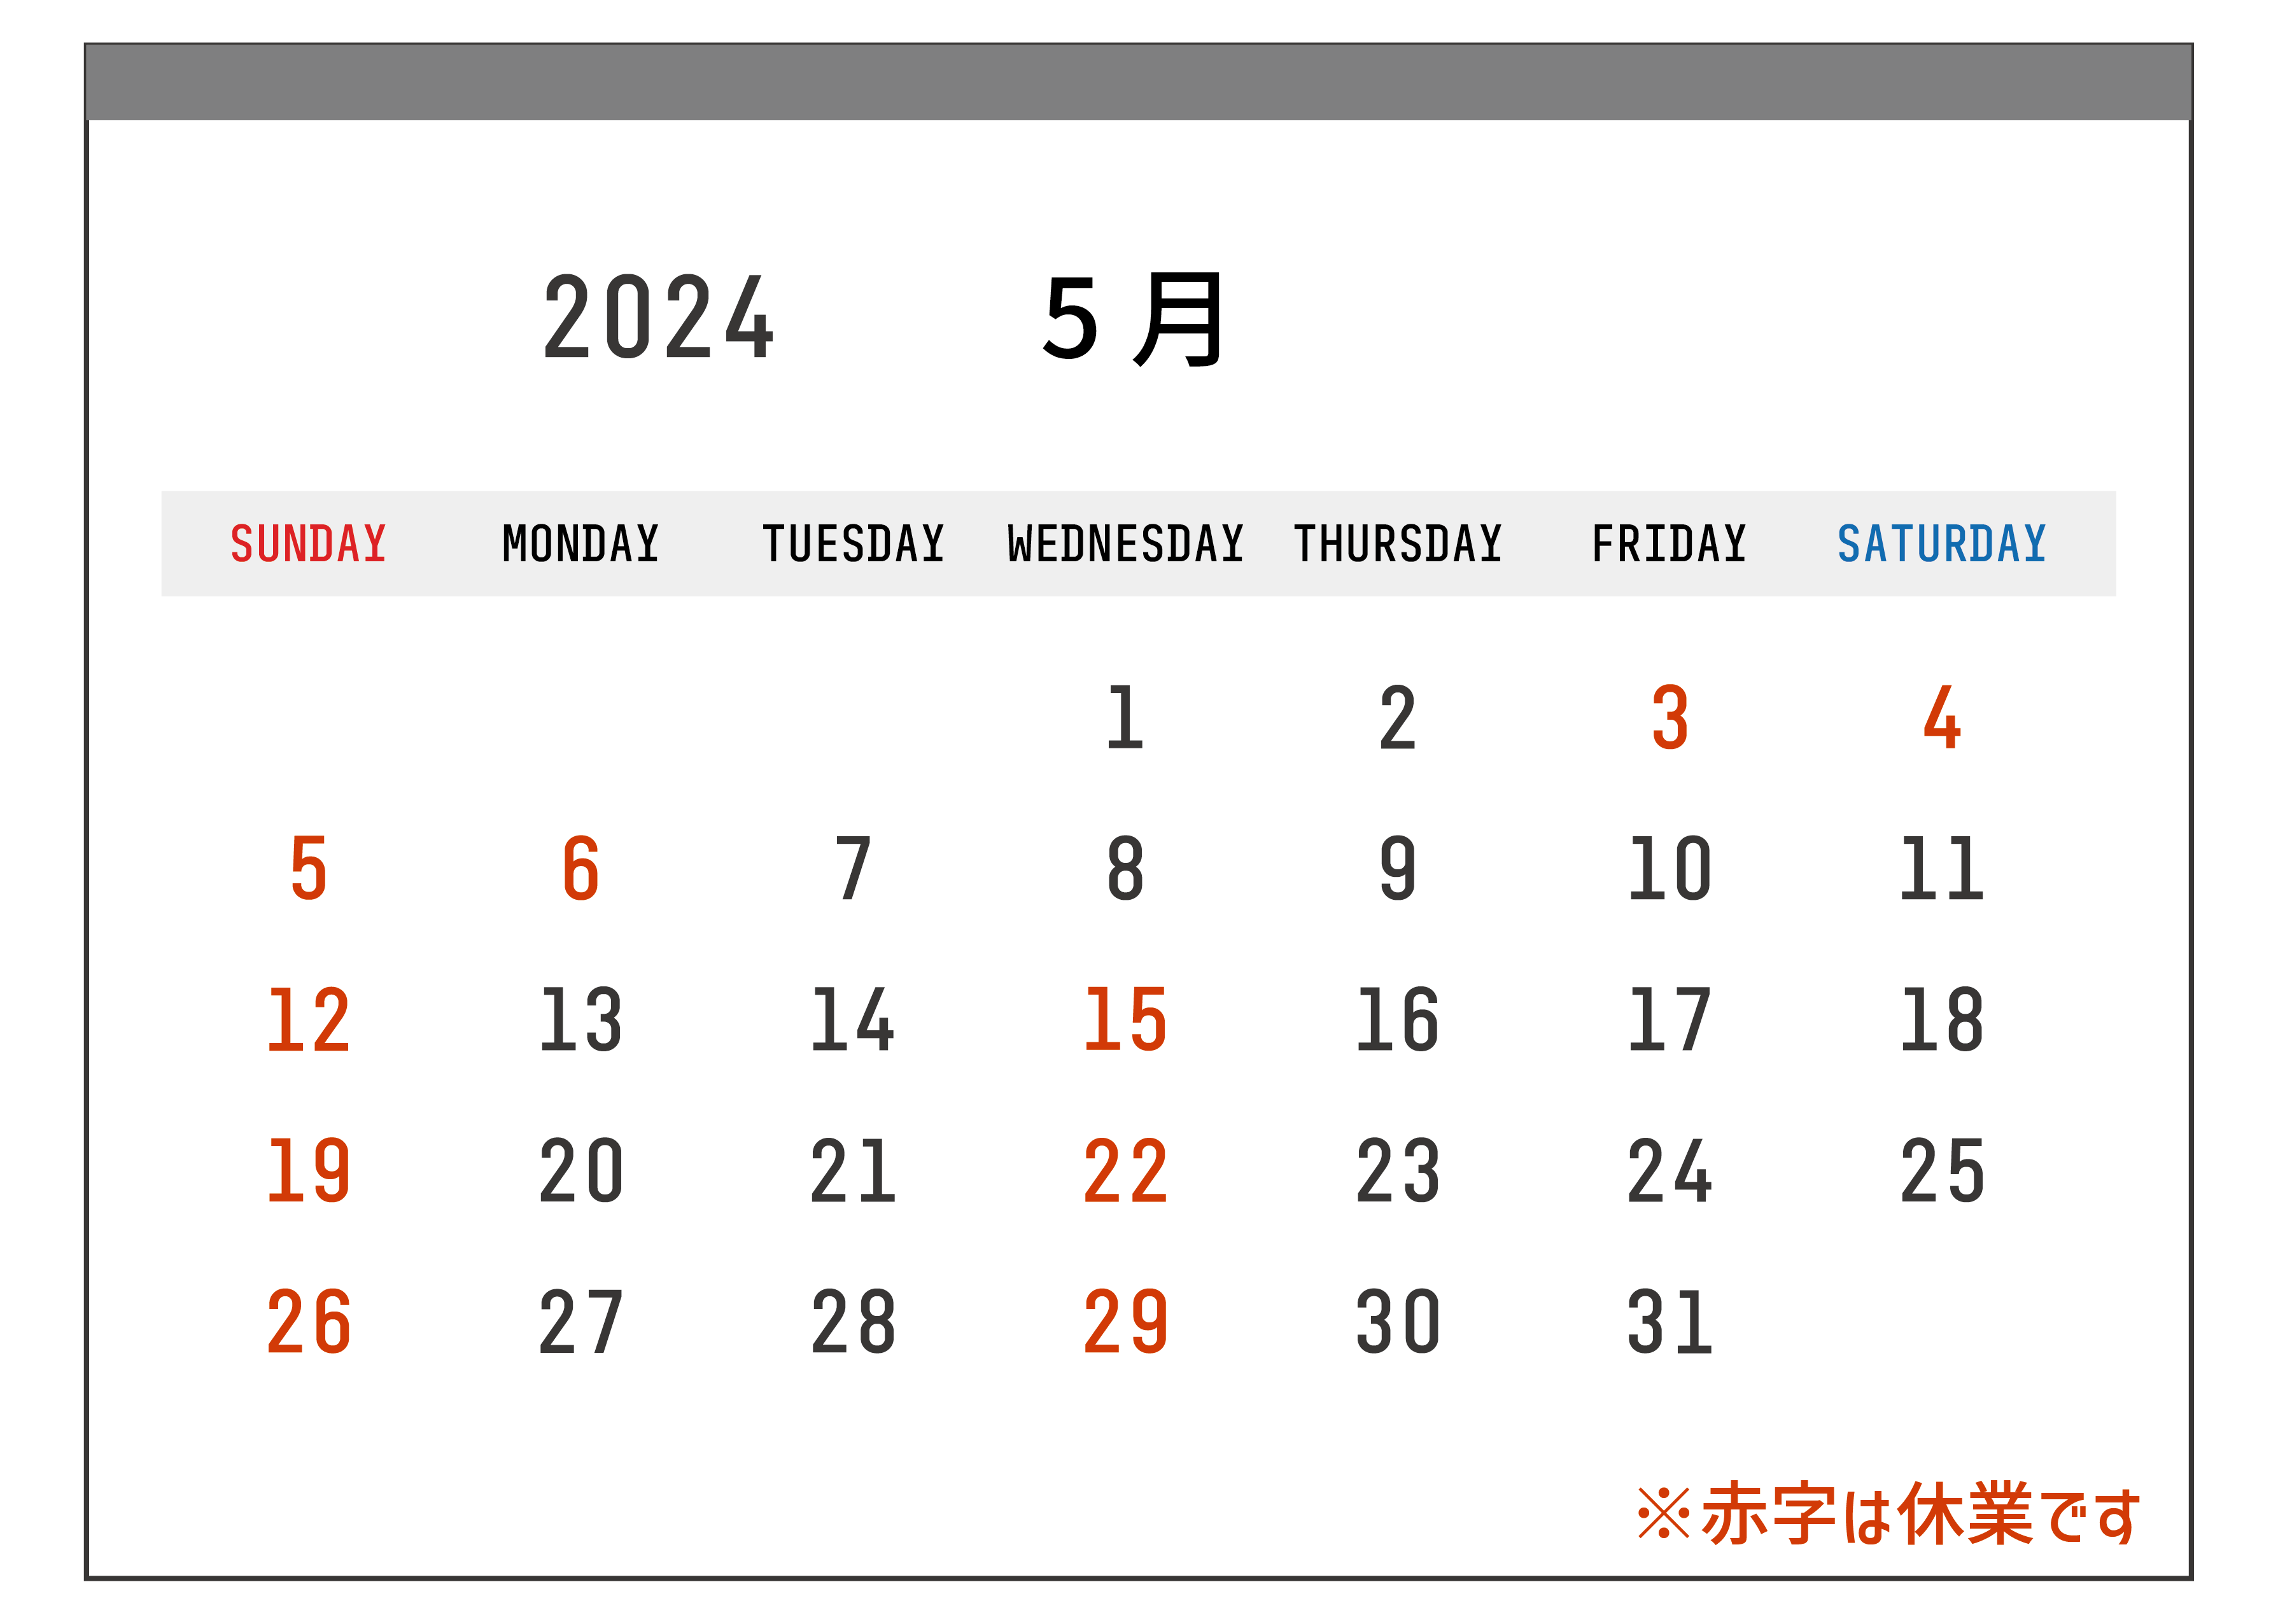 2024年5月のカレンダー